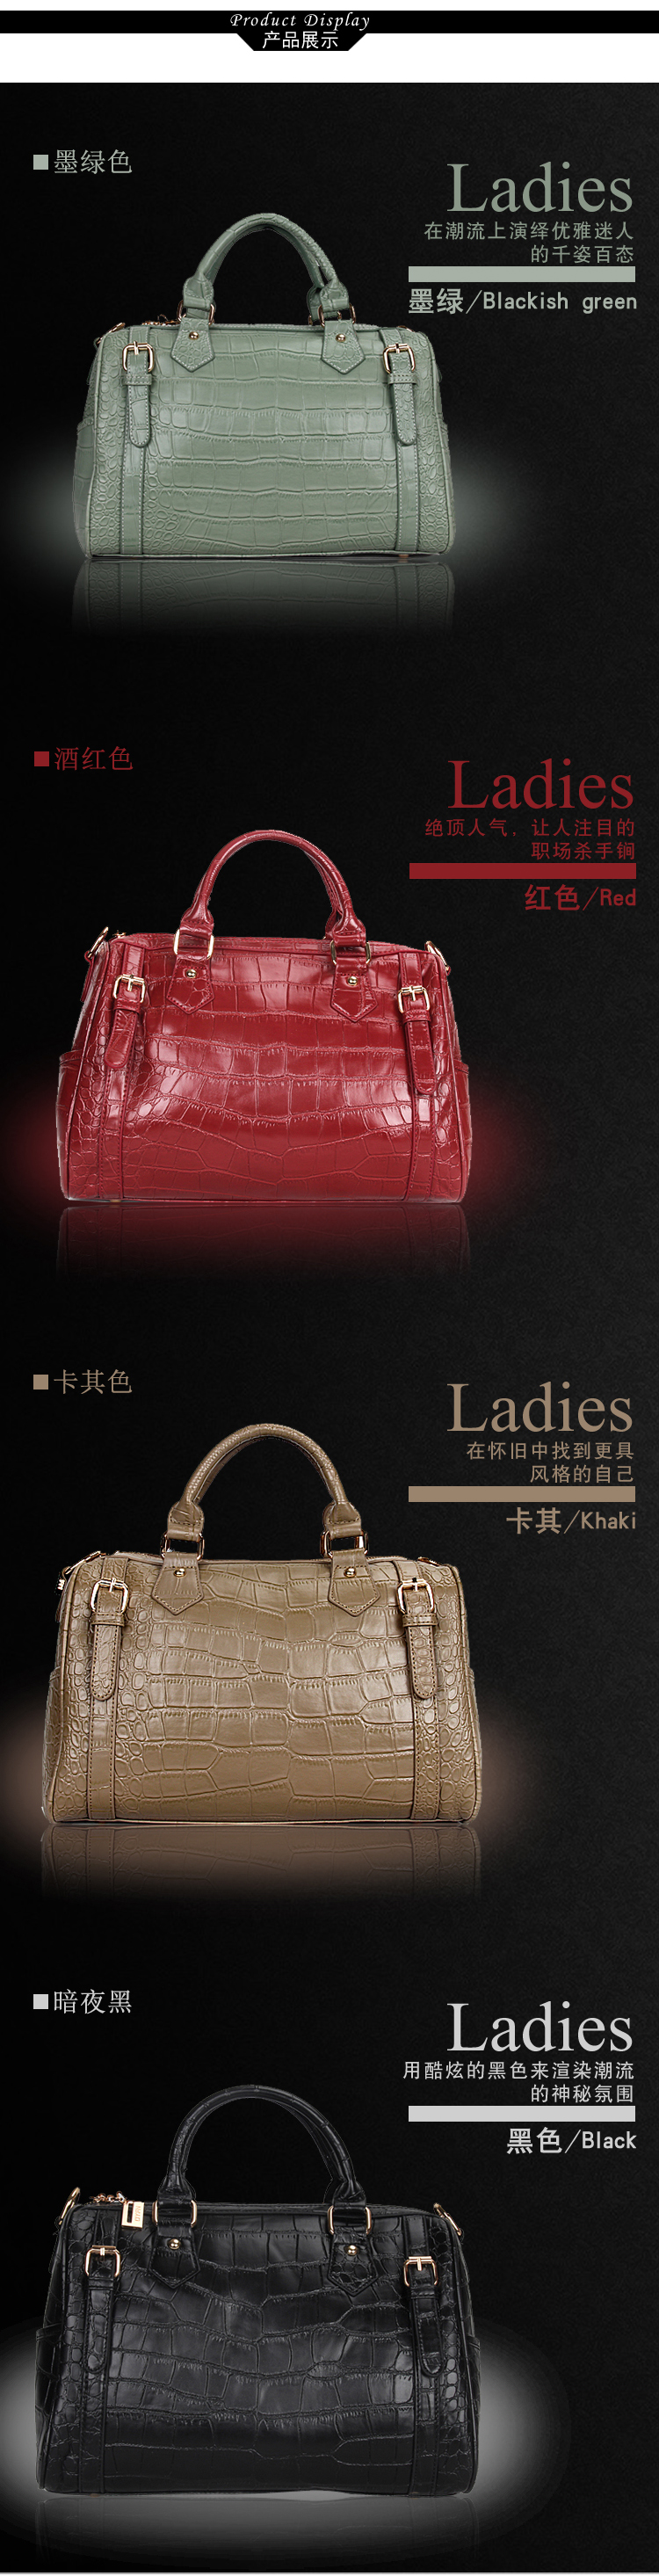 Mssefn 2014最新款 韩版女包鳄鱼纹手提斜挎女式包包60057